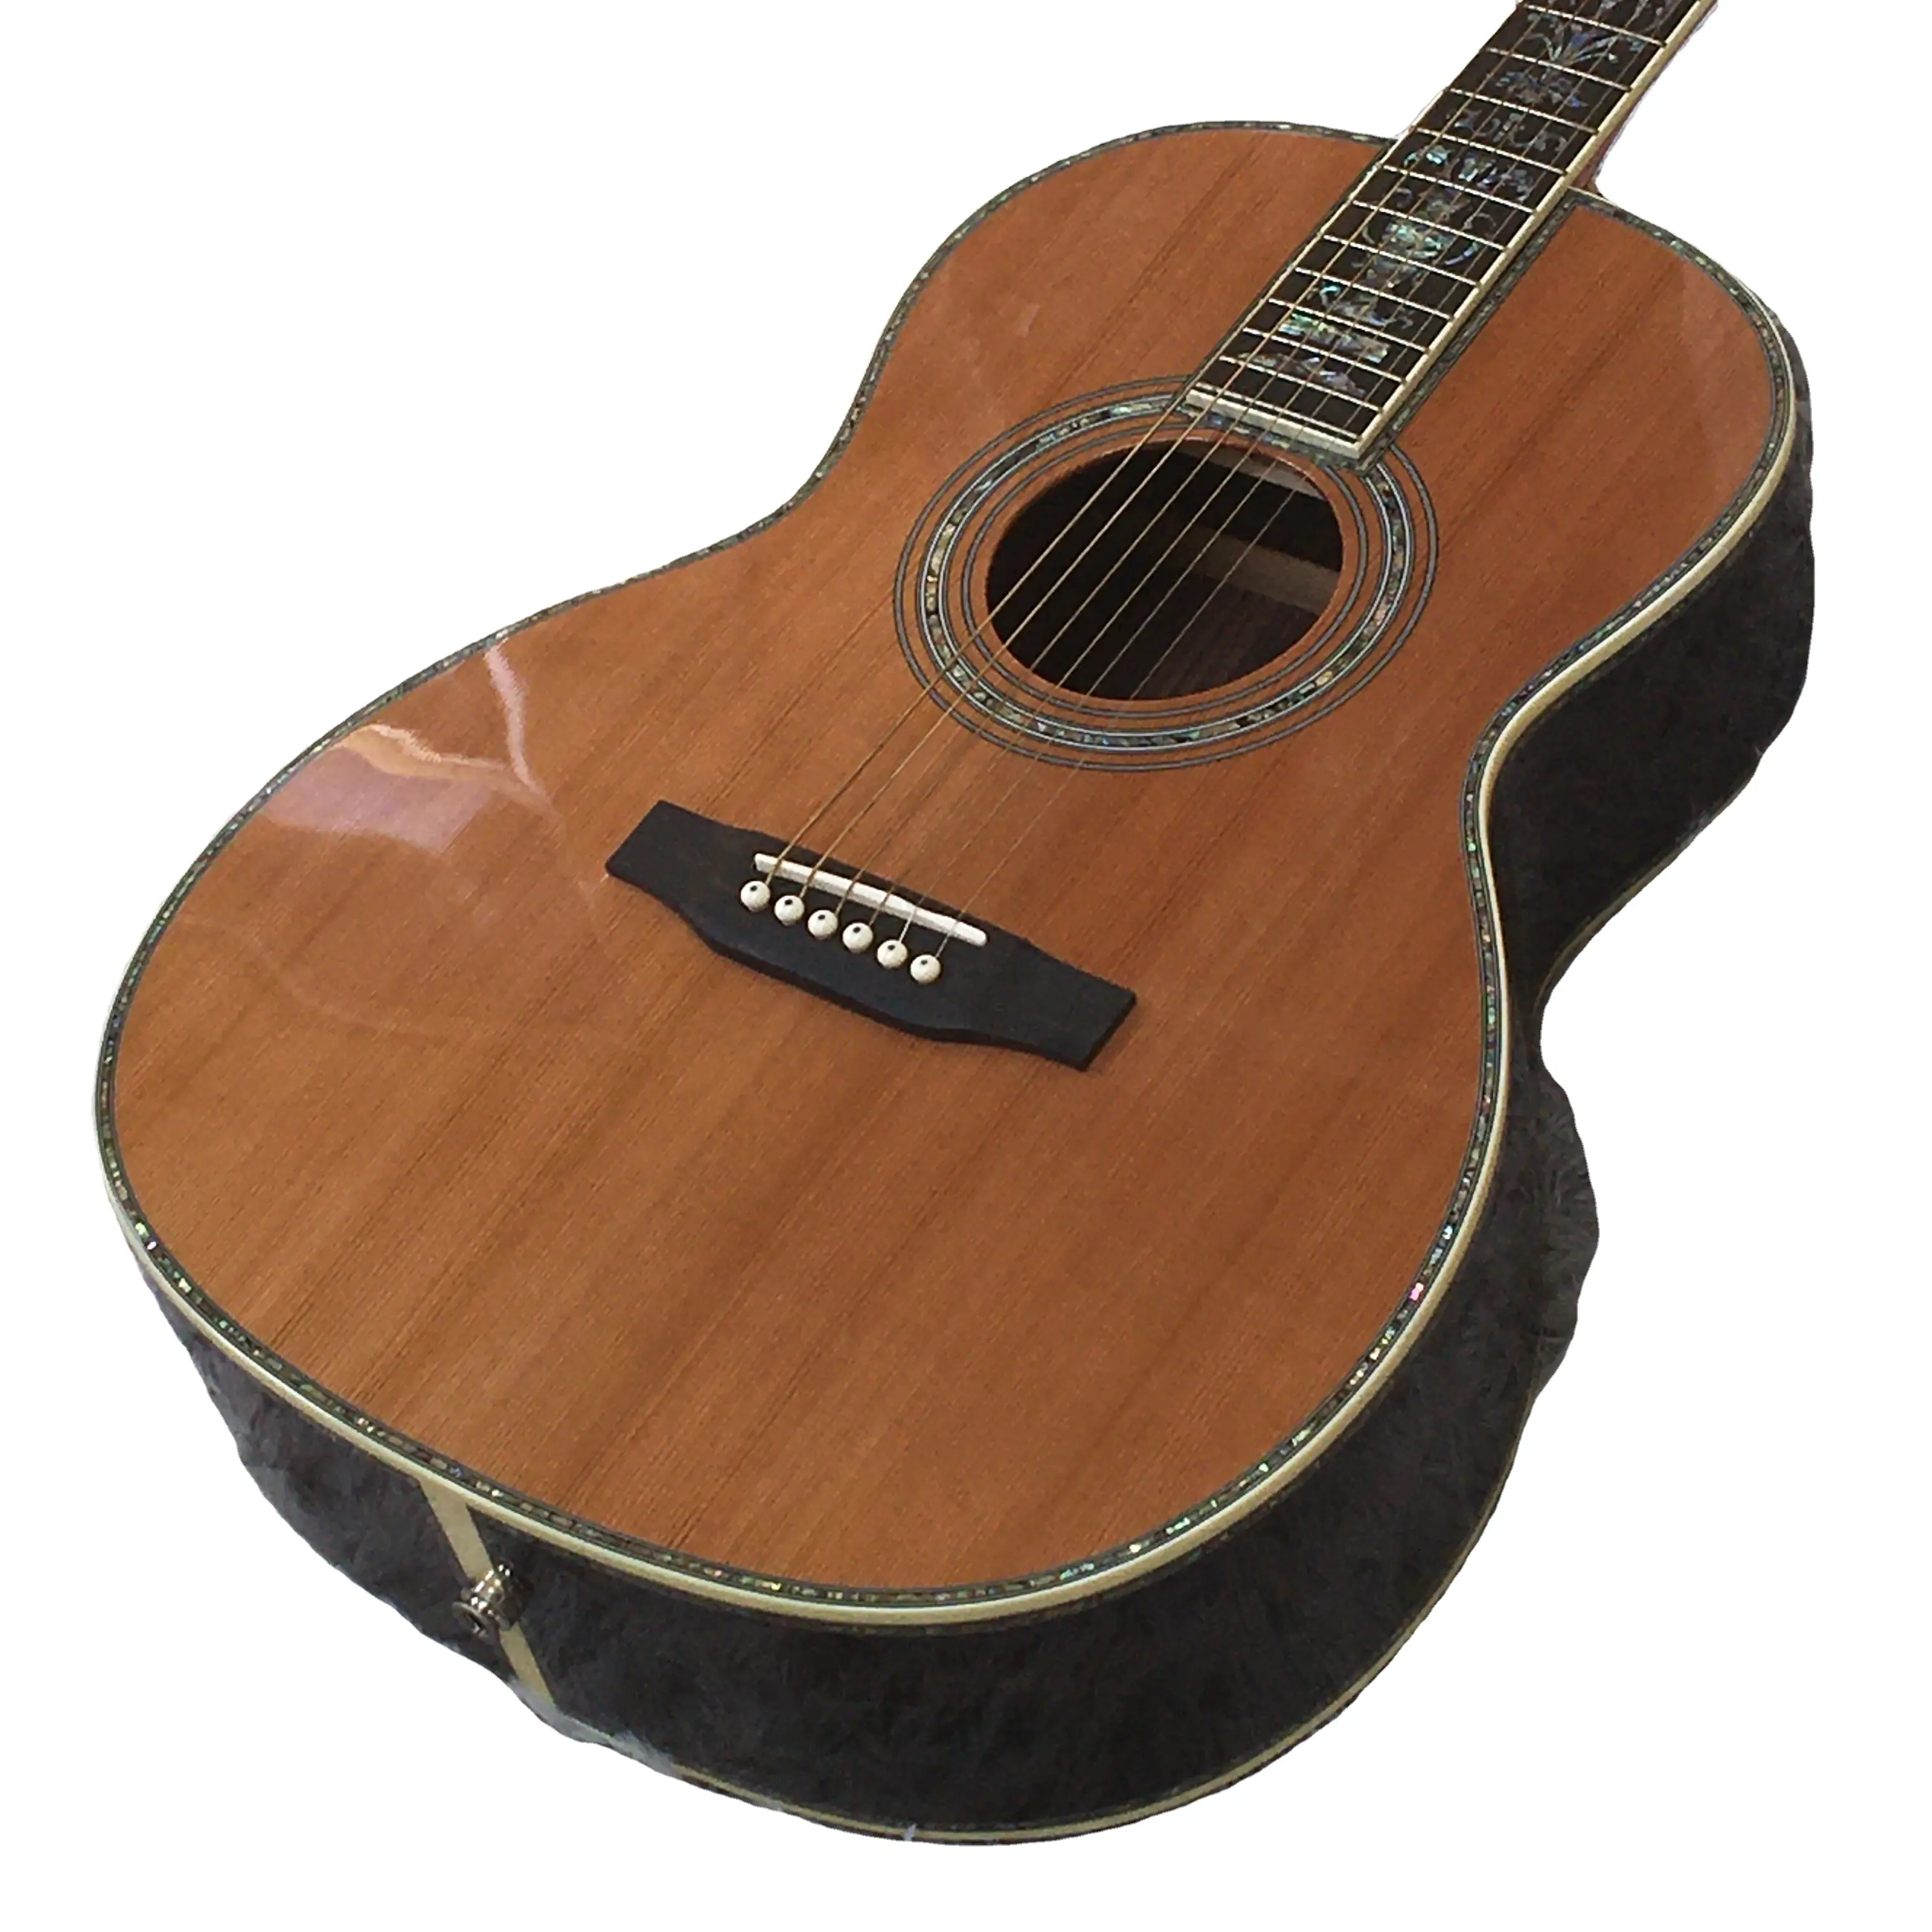 D42 di marca Martn chitarra acustica ebano tastiera fiore intarsio F/S